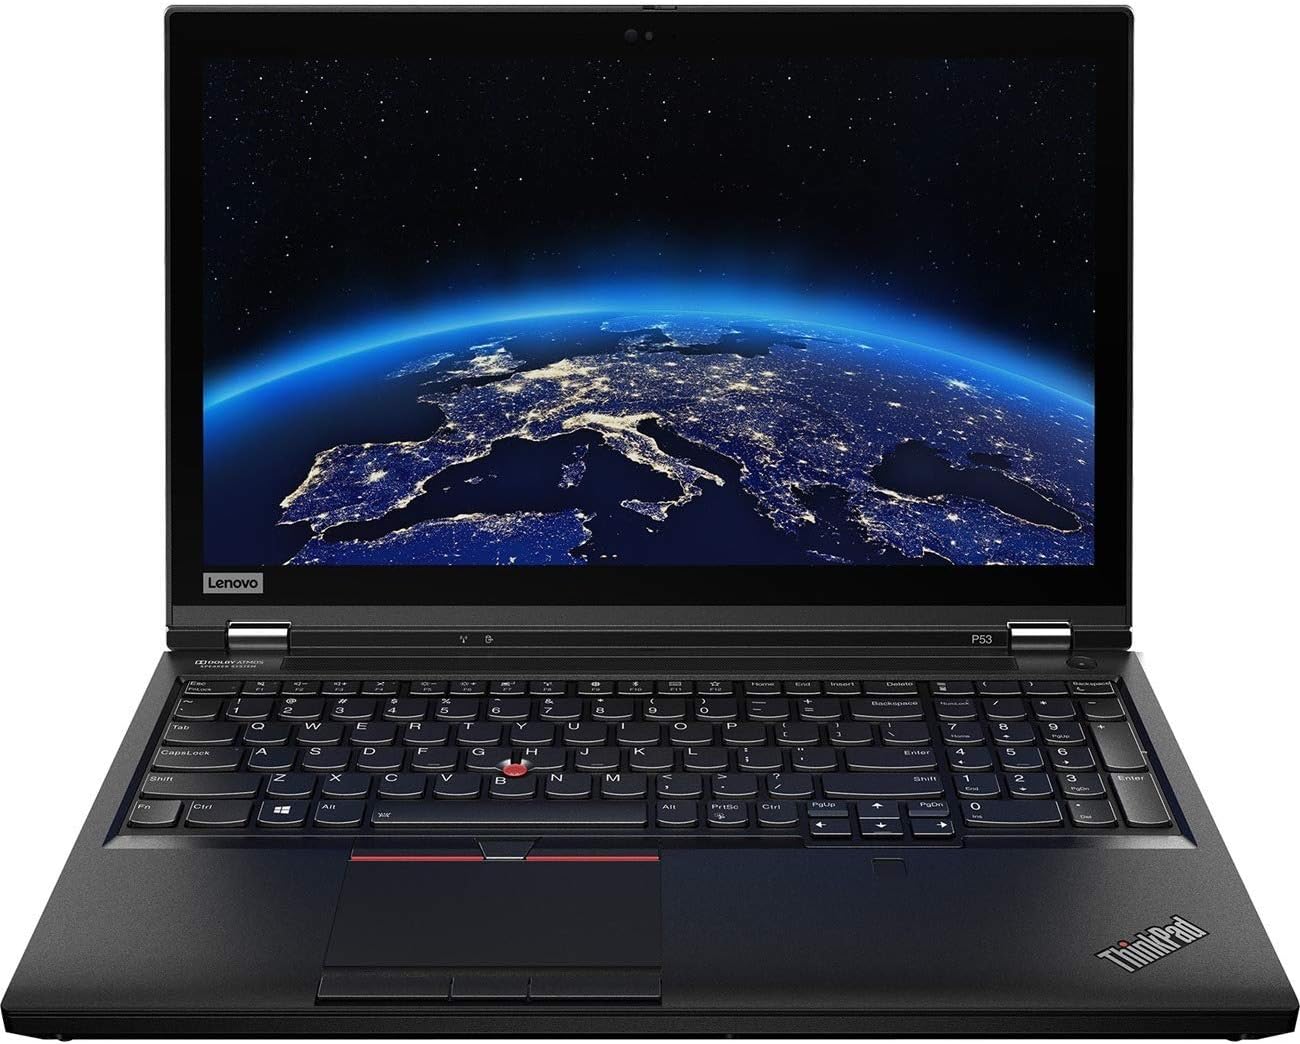 Lenovo ThinkPad P53 Workstation Laptop (Intel i7-9750H 6-Core, 32GB RAM, 256GB SATA SSD, Quadro T1000, 15.6" Refurb.